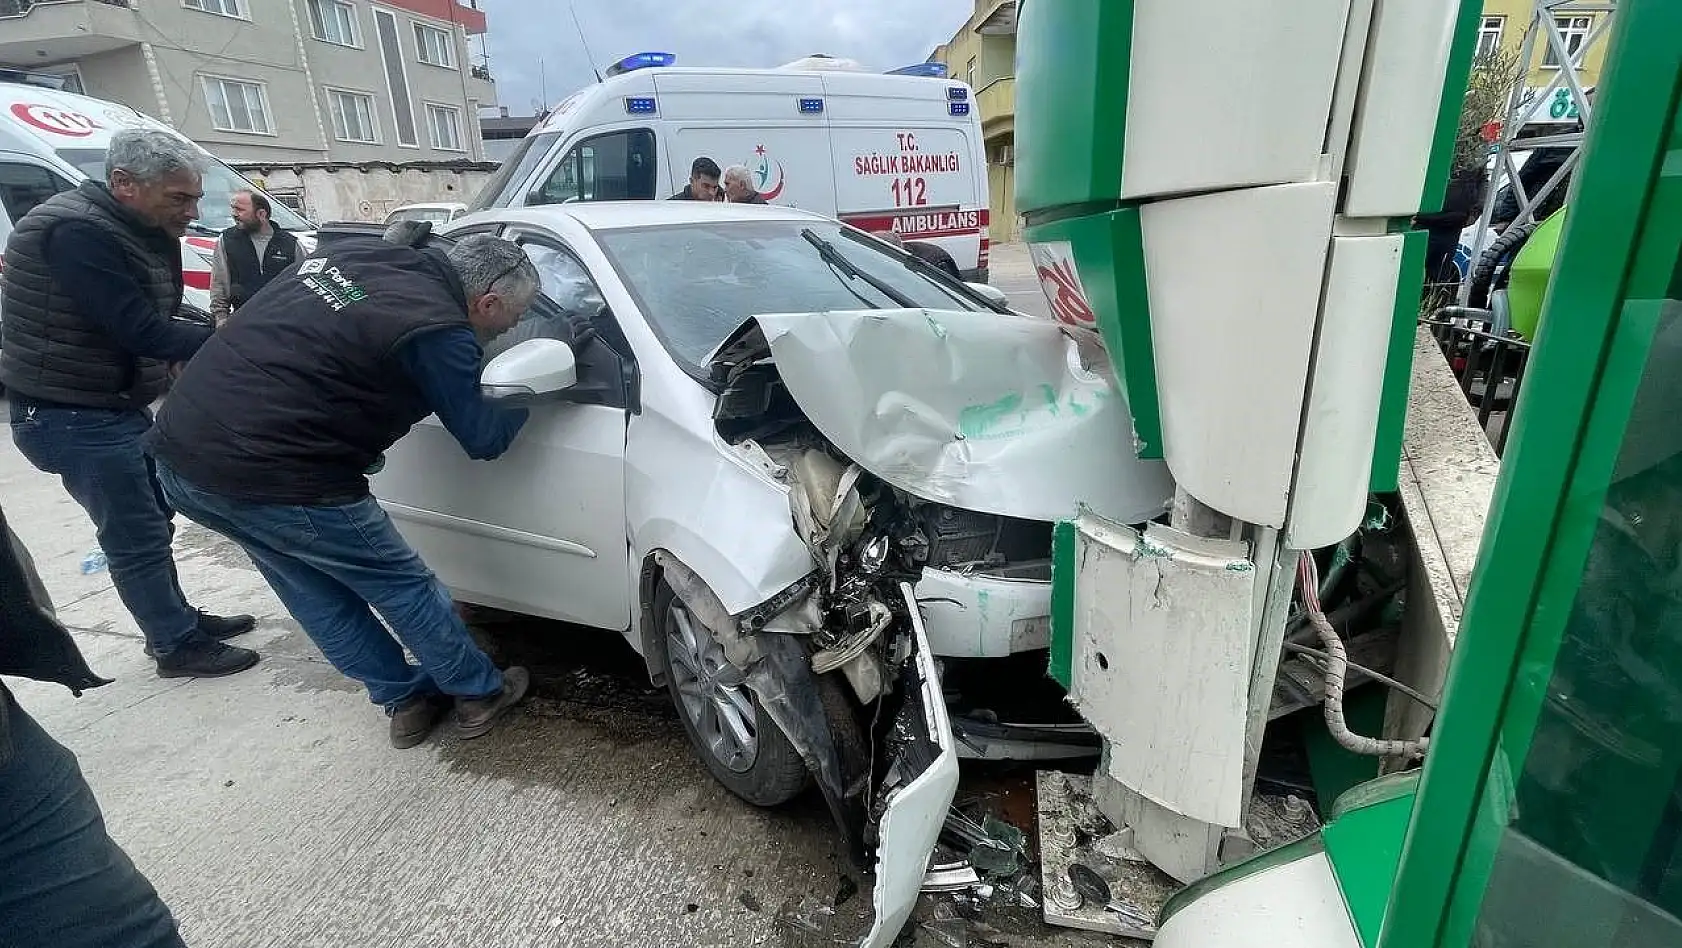 Bursa'da facia teğet geçti: 5 yaralı